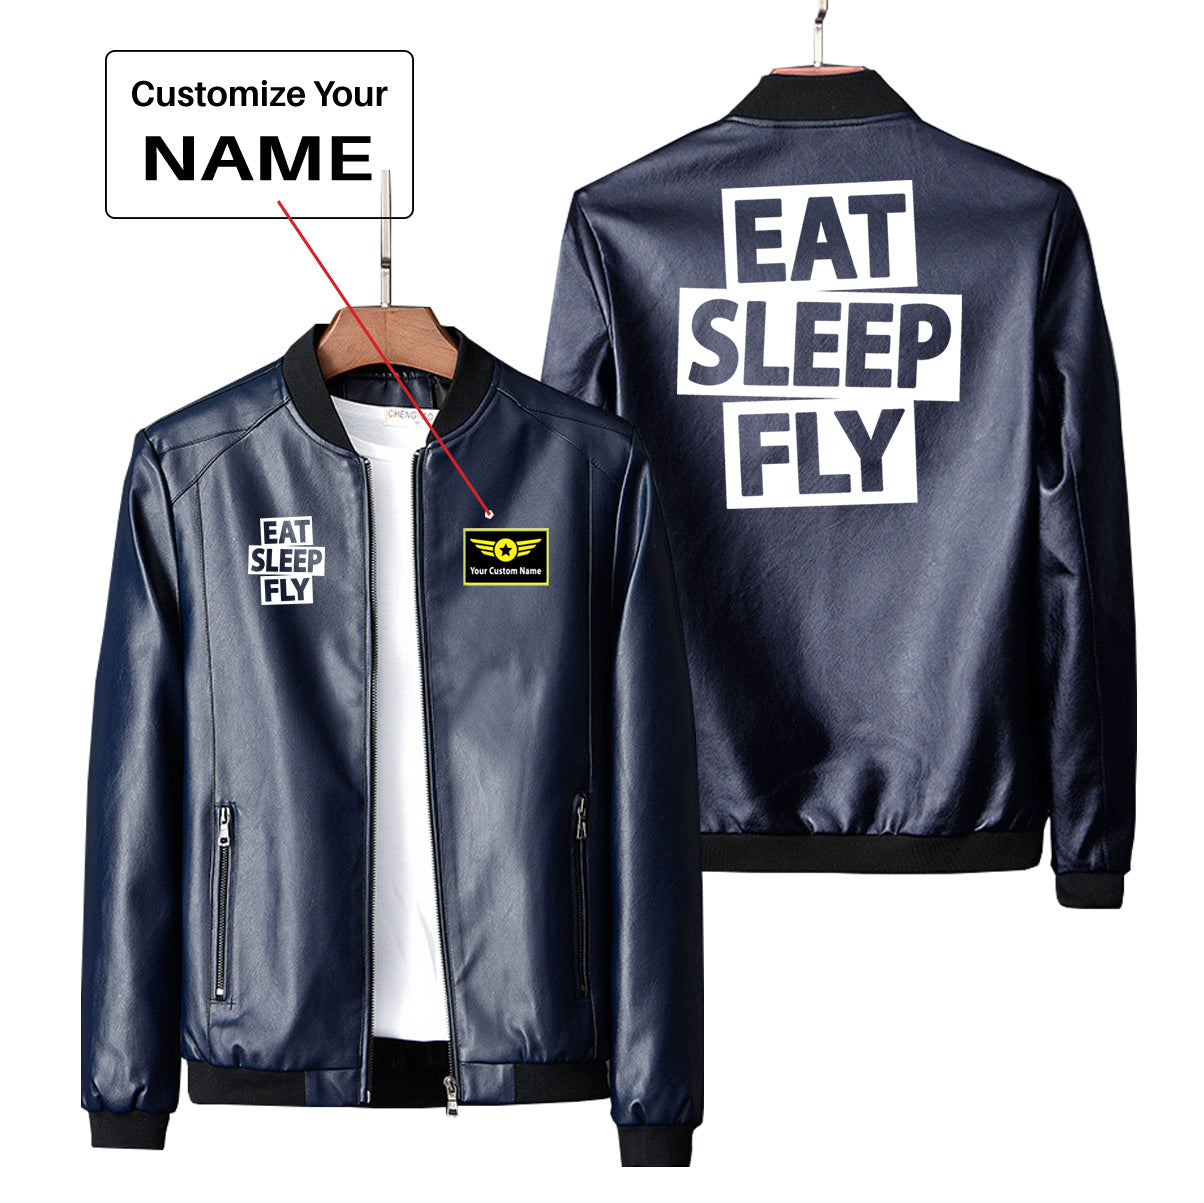 Eat Sleep Fly Designed PU Leather Jackets